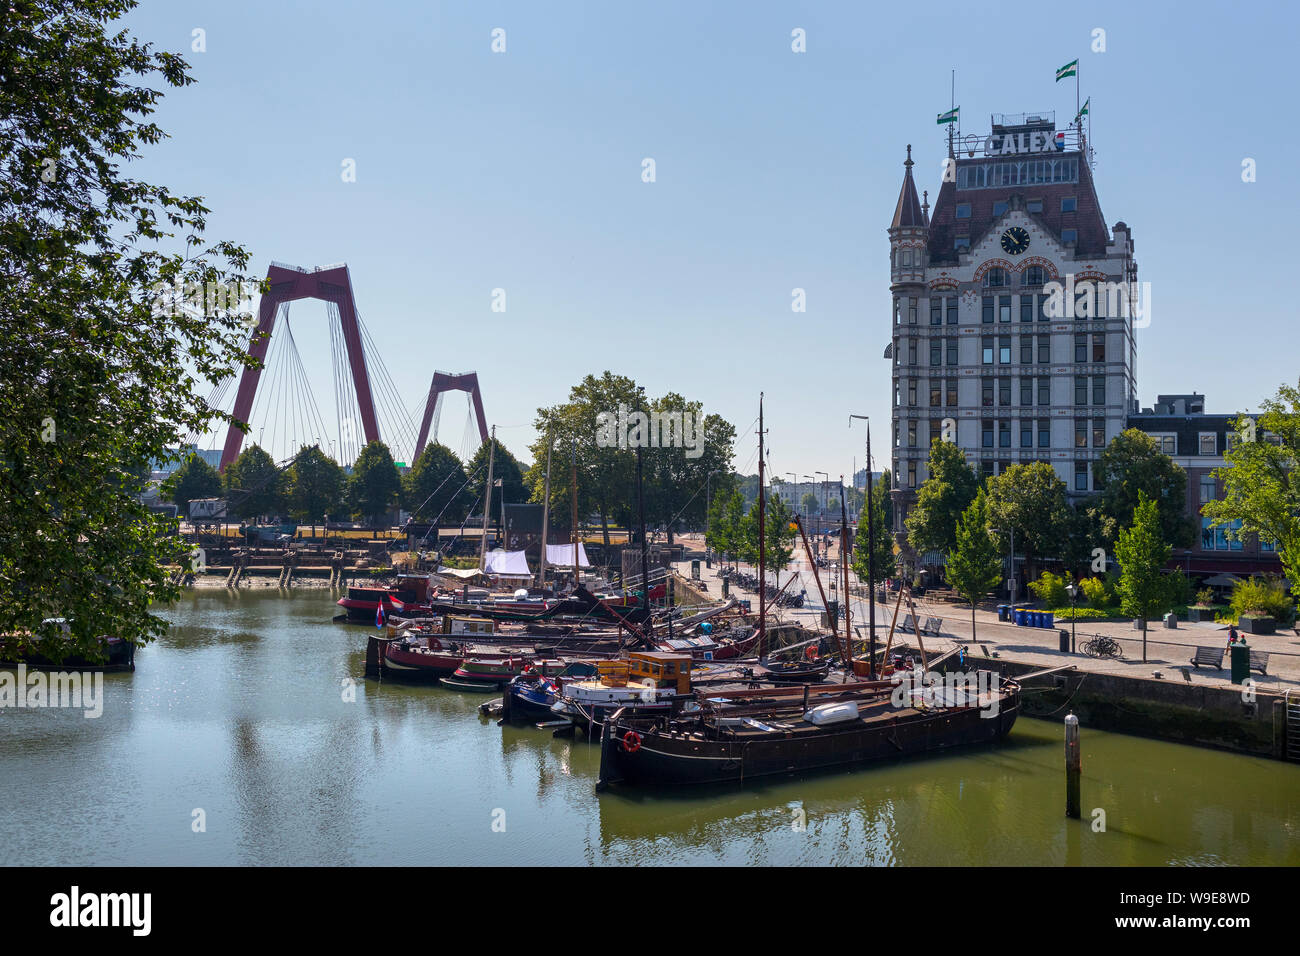 Rotterdam, Holland - Juli 30, 2019: Oude Haven, den alten Hafen, Teil der maritimen Viertel mit historischen Schiffen, mit dem Weißen Haus im Hintergrund Stockfoto